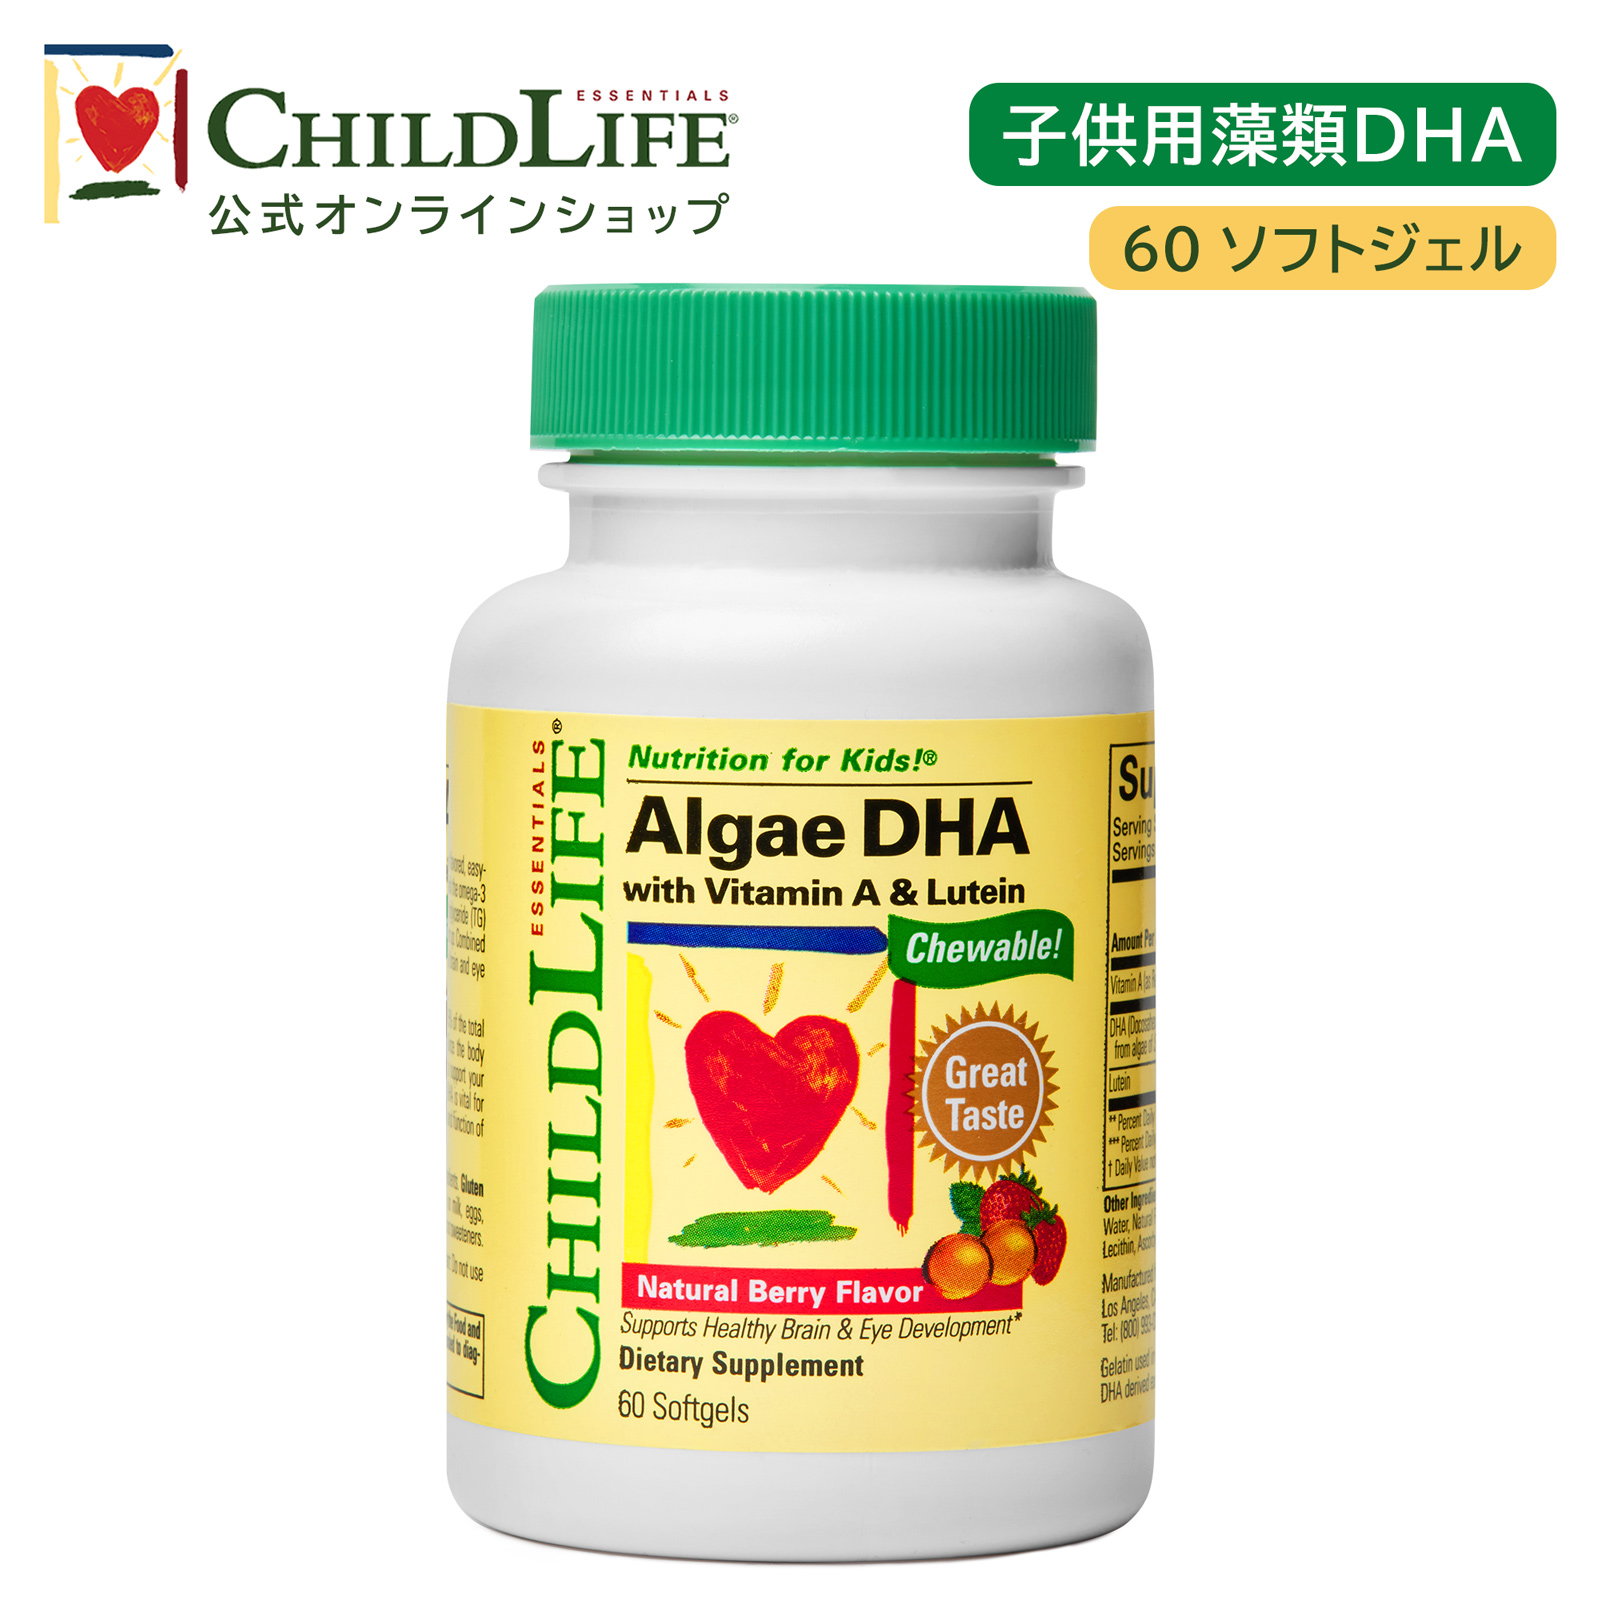 子供用藻類DHA 60ソフトジェルサプリ 子供用サプリ 子供用DHA 子供の健康 DHA ビタミンA ルテイン ナチュラルベリー風味 学びを応援 子供の成長 ドコサヘキサエン酸 必須脂肪酸 思考の働き キッズ [16550]